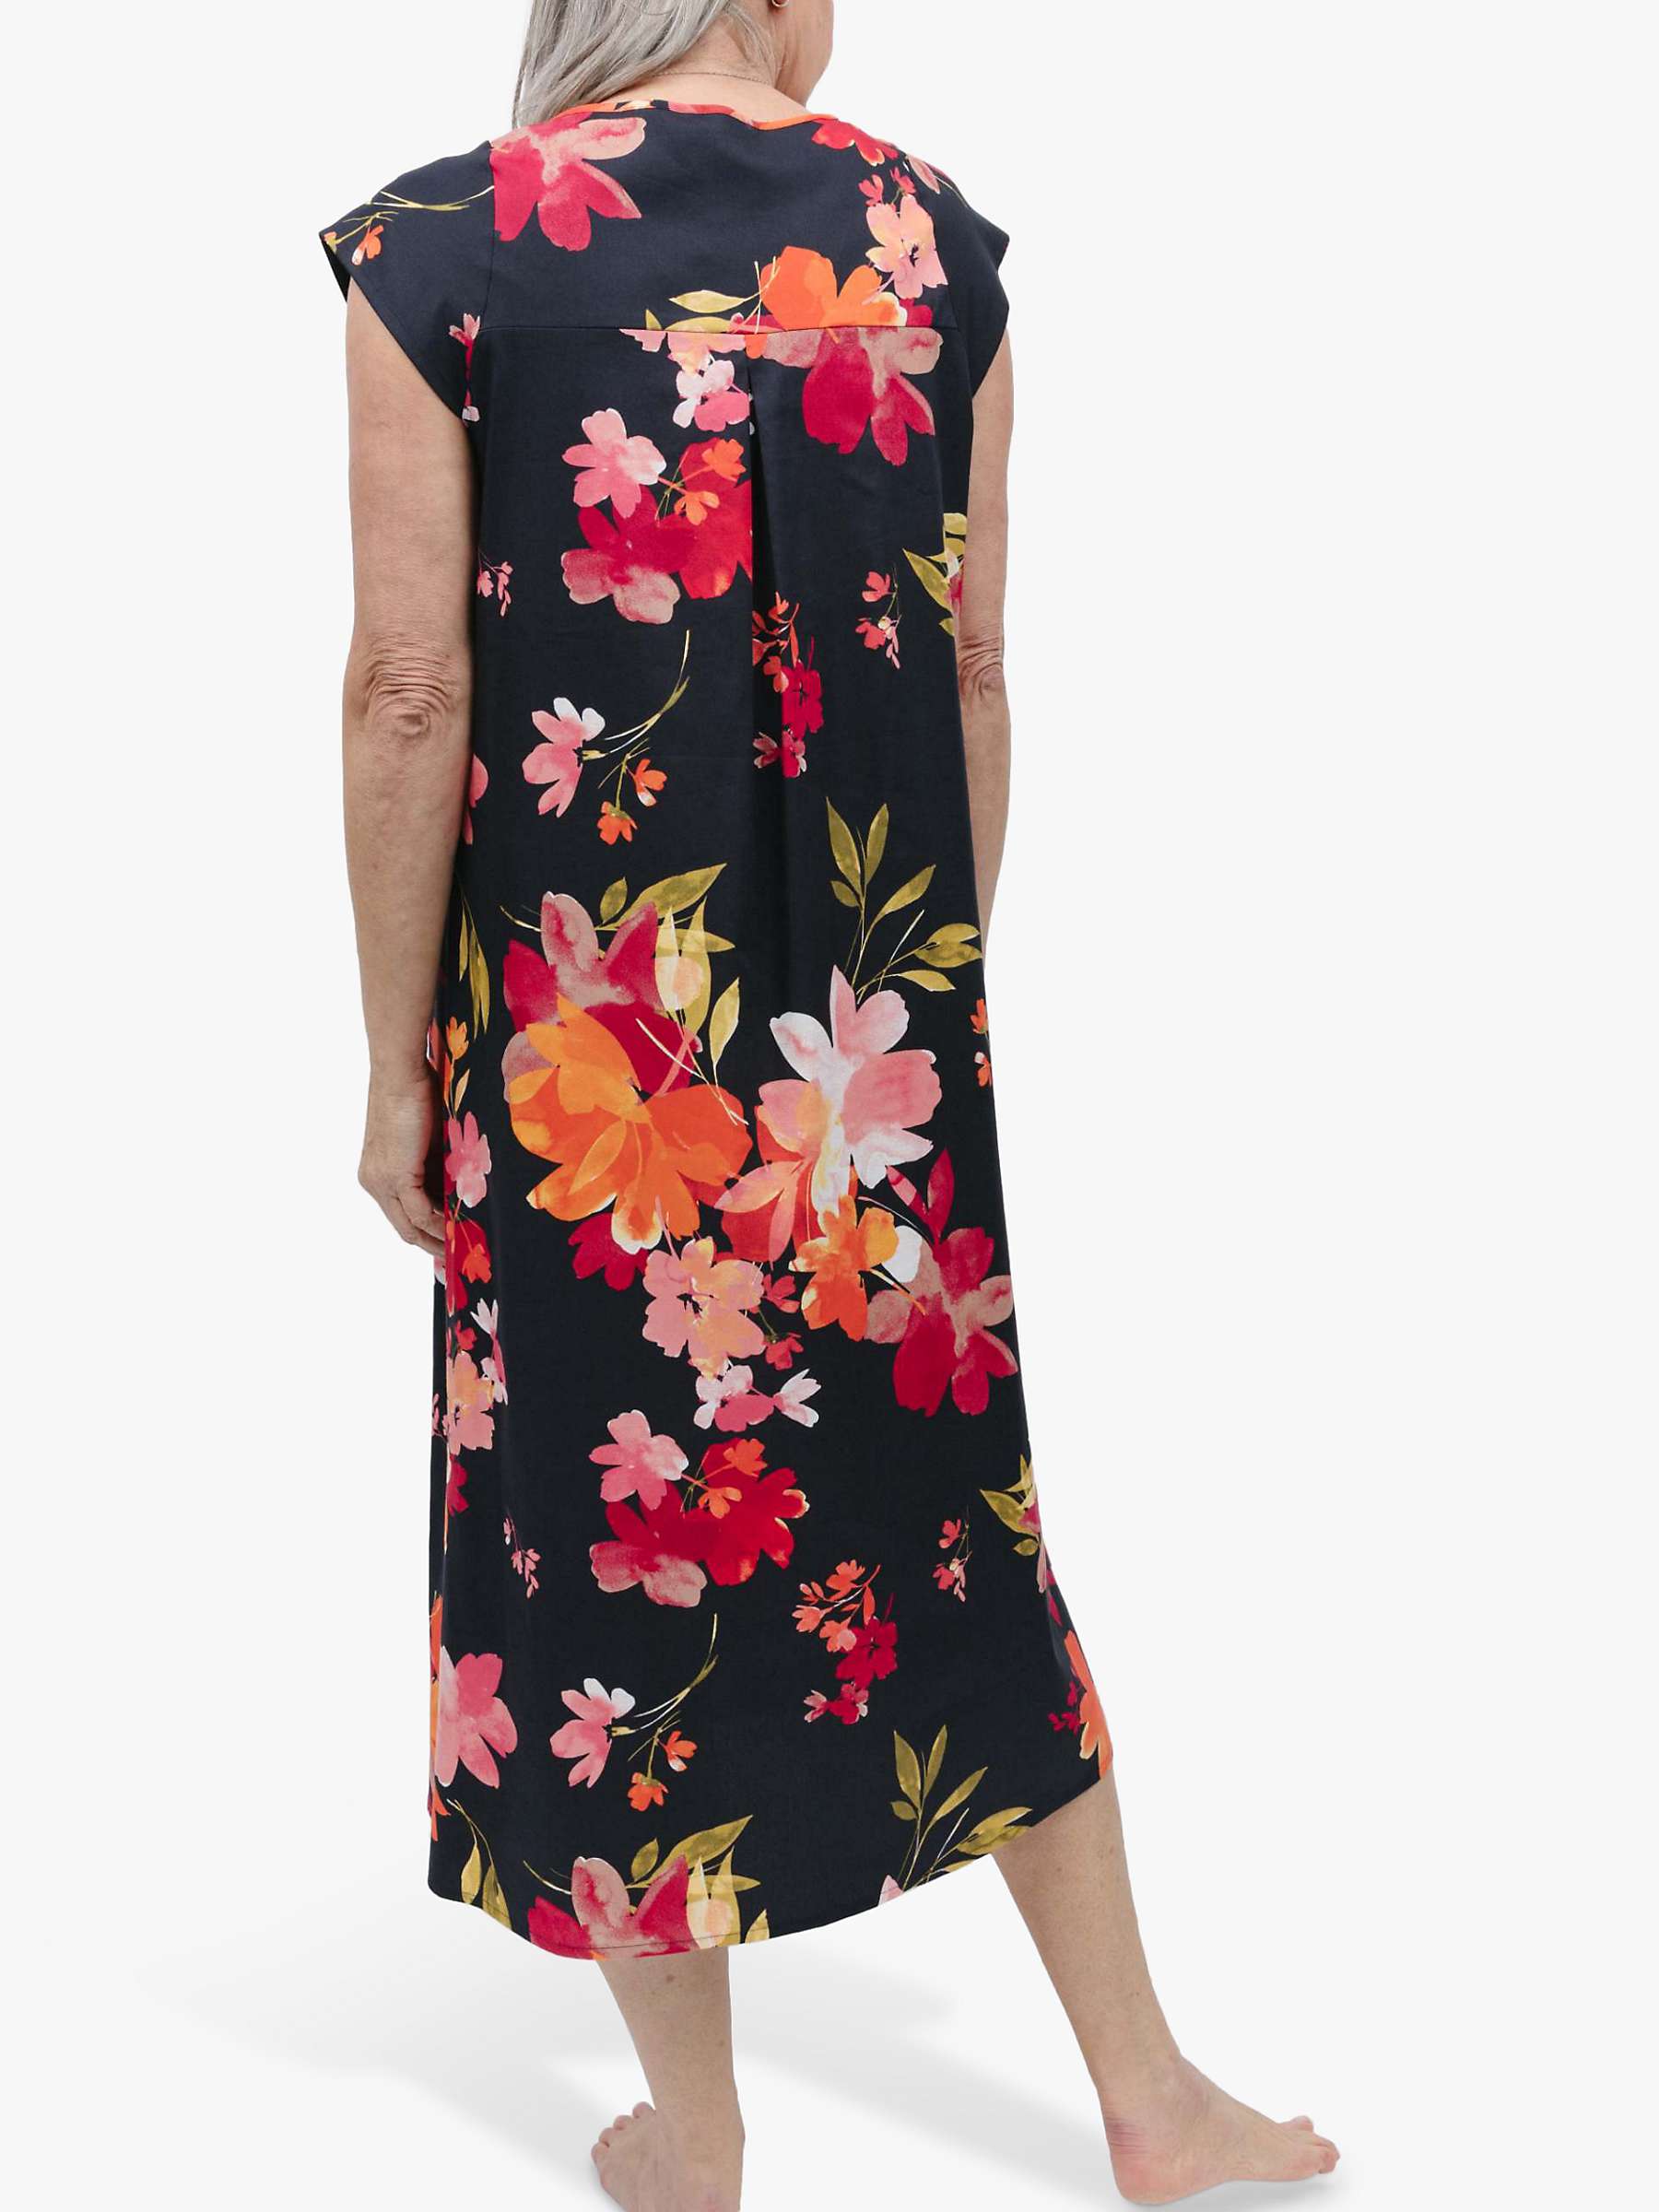 Buy Nora Rose by Cyberjammies Winnie Floral Print Long Nightdress, Black/Multi Online at johnlewis.com